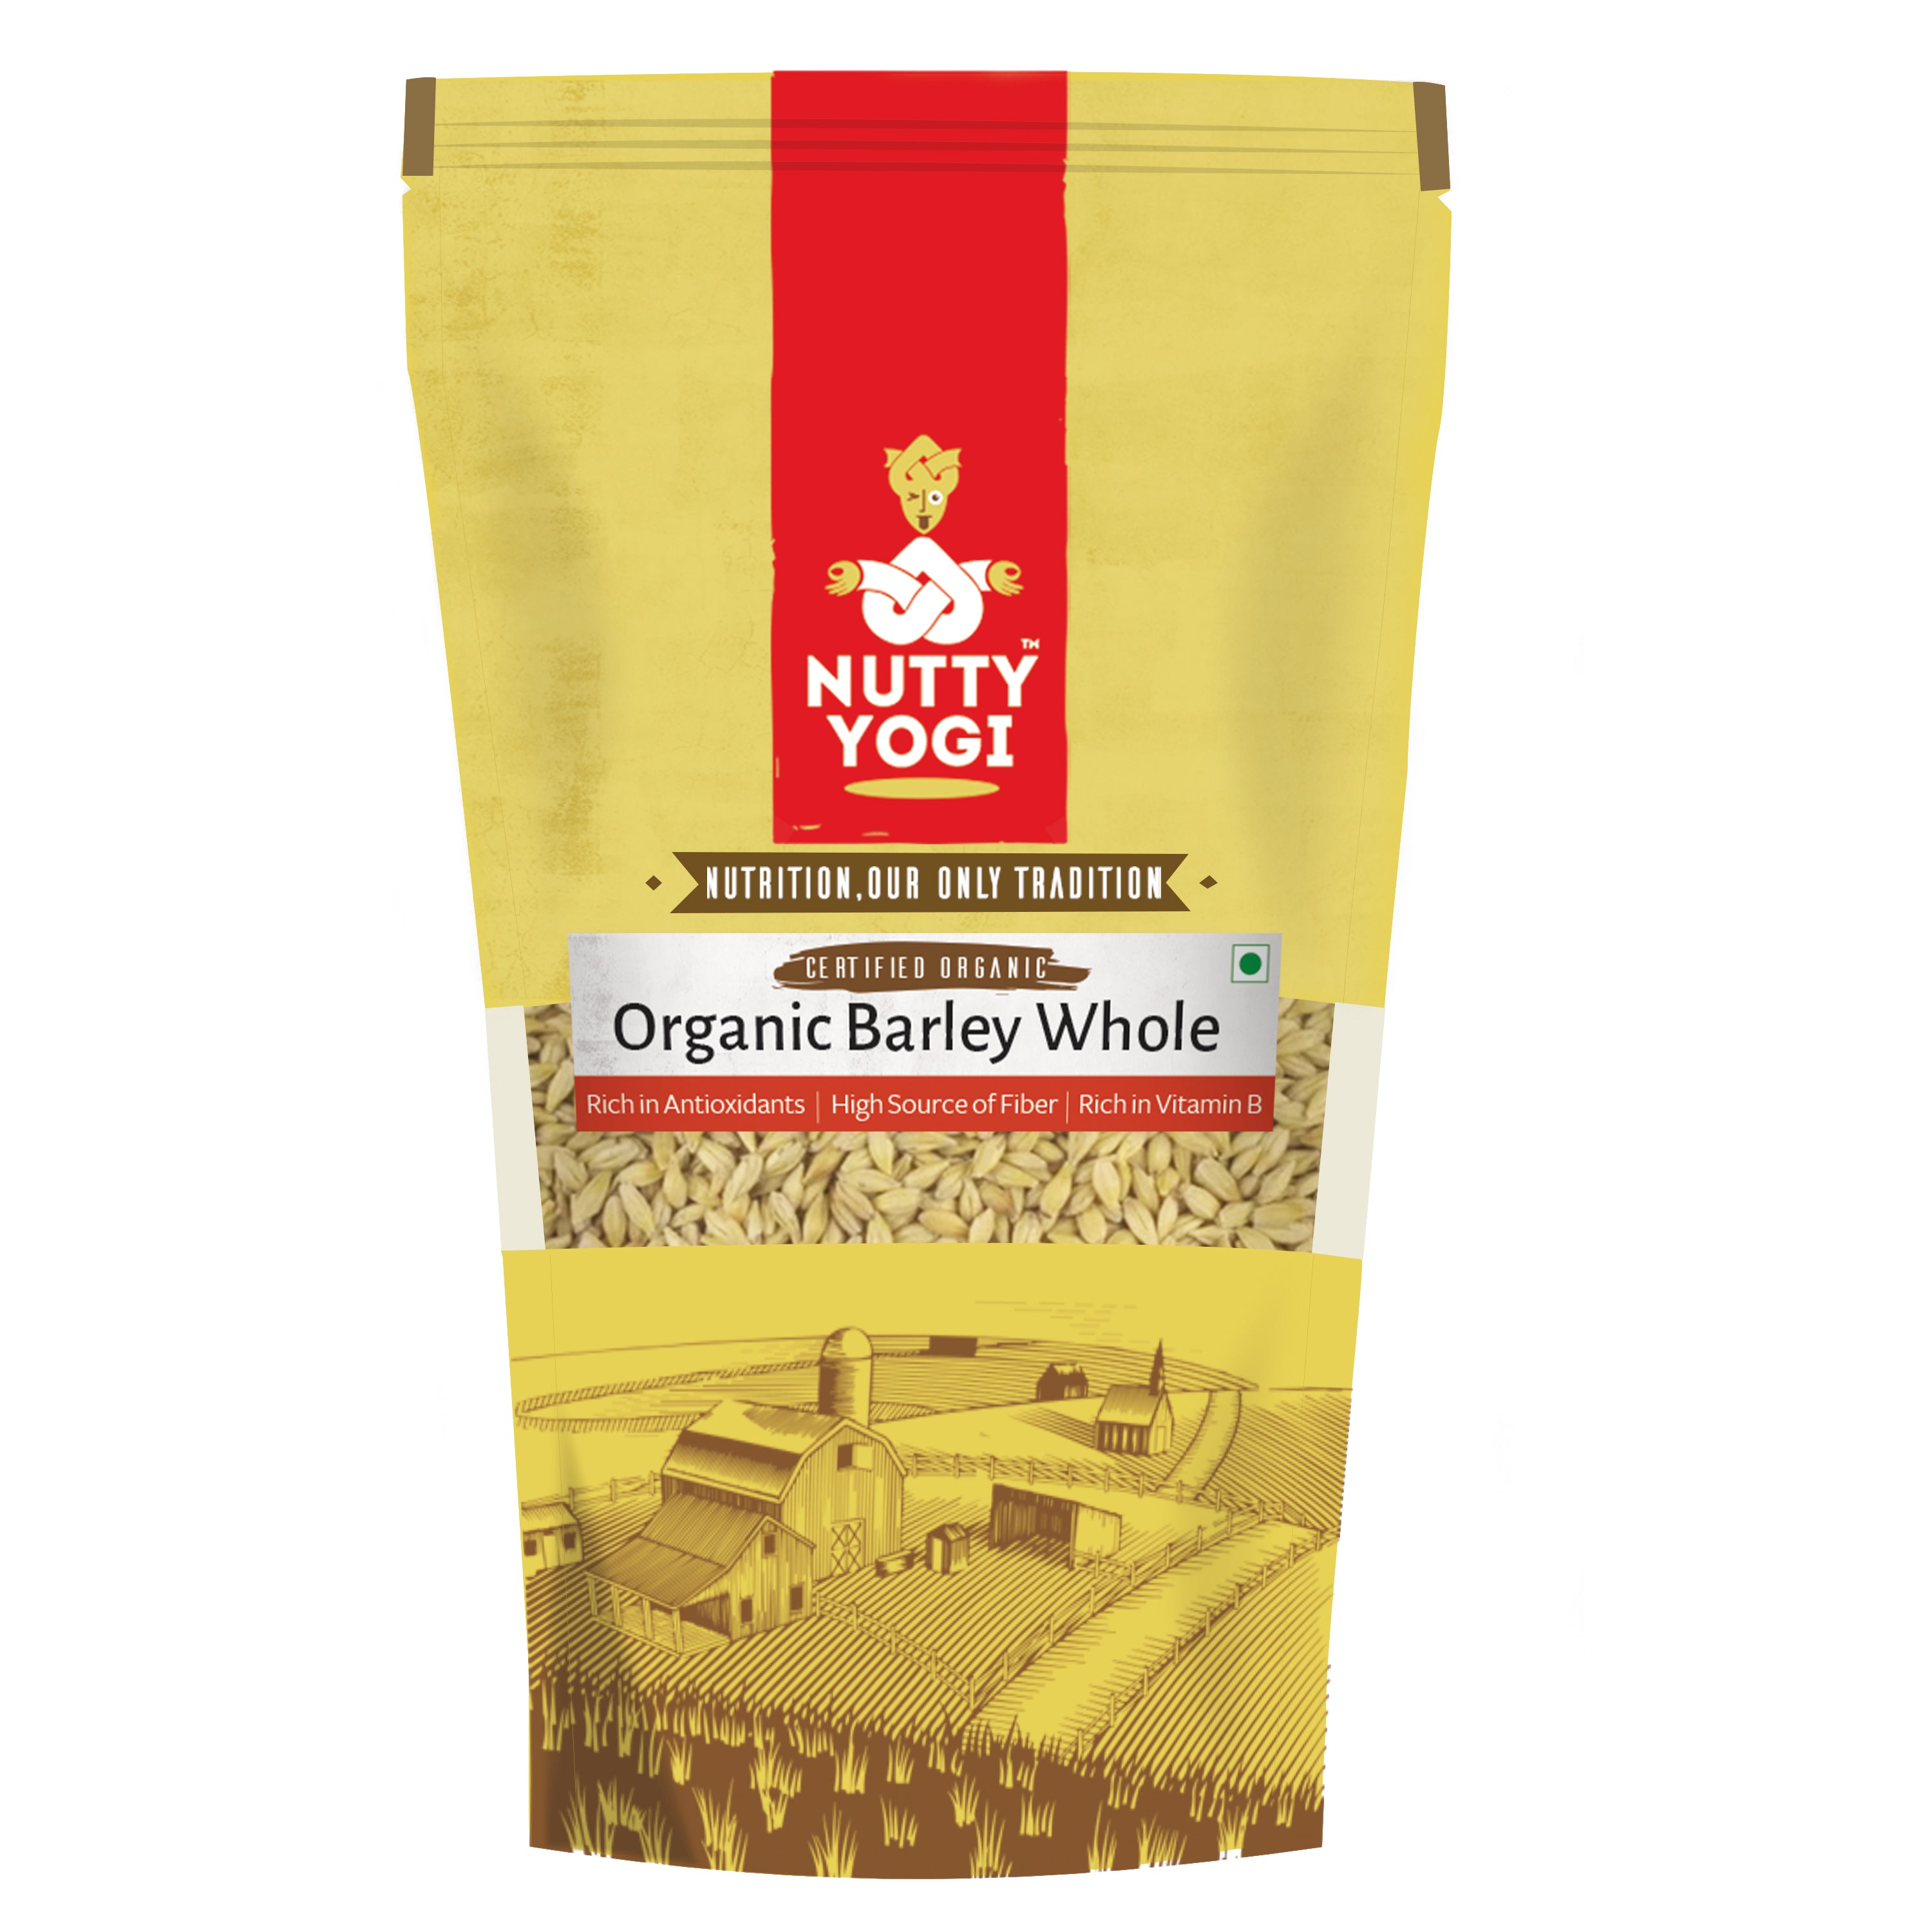 Nutty Yogi Organic Barley Whole